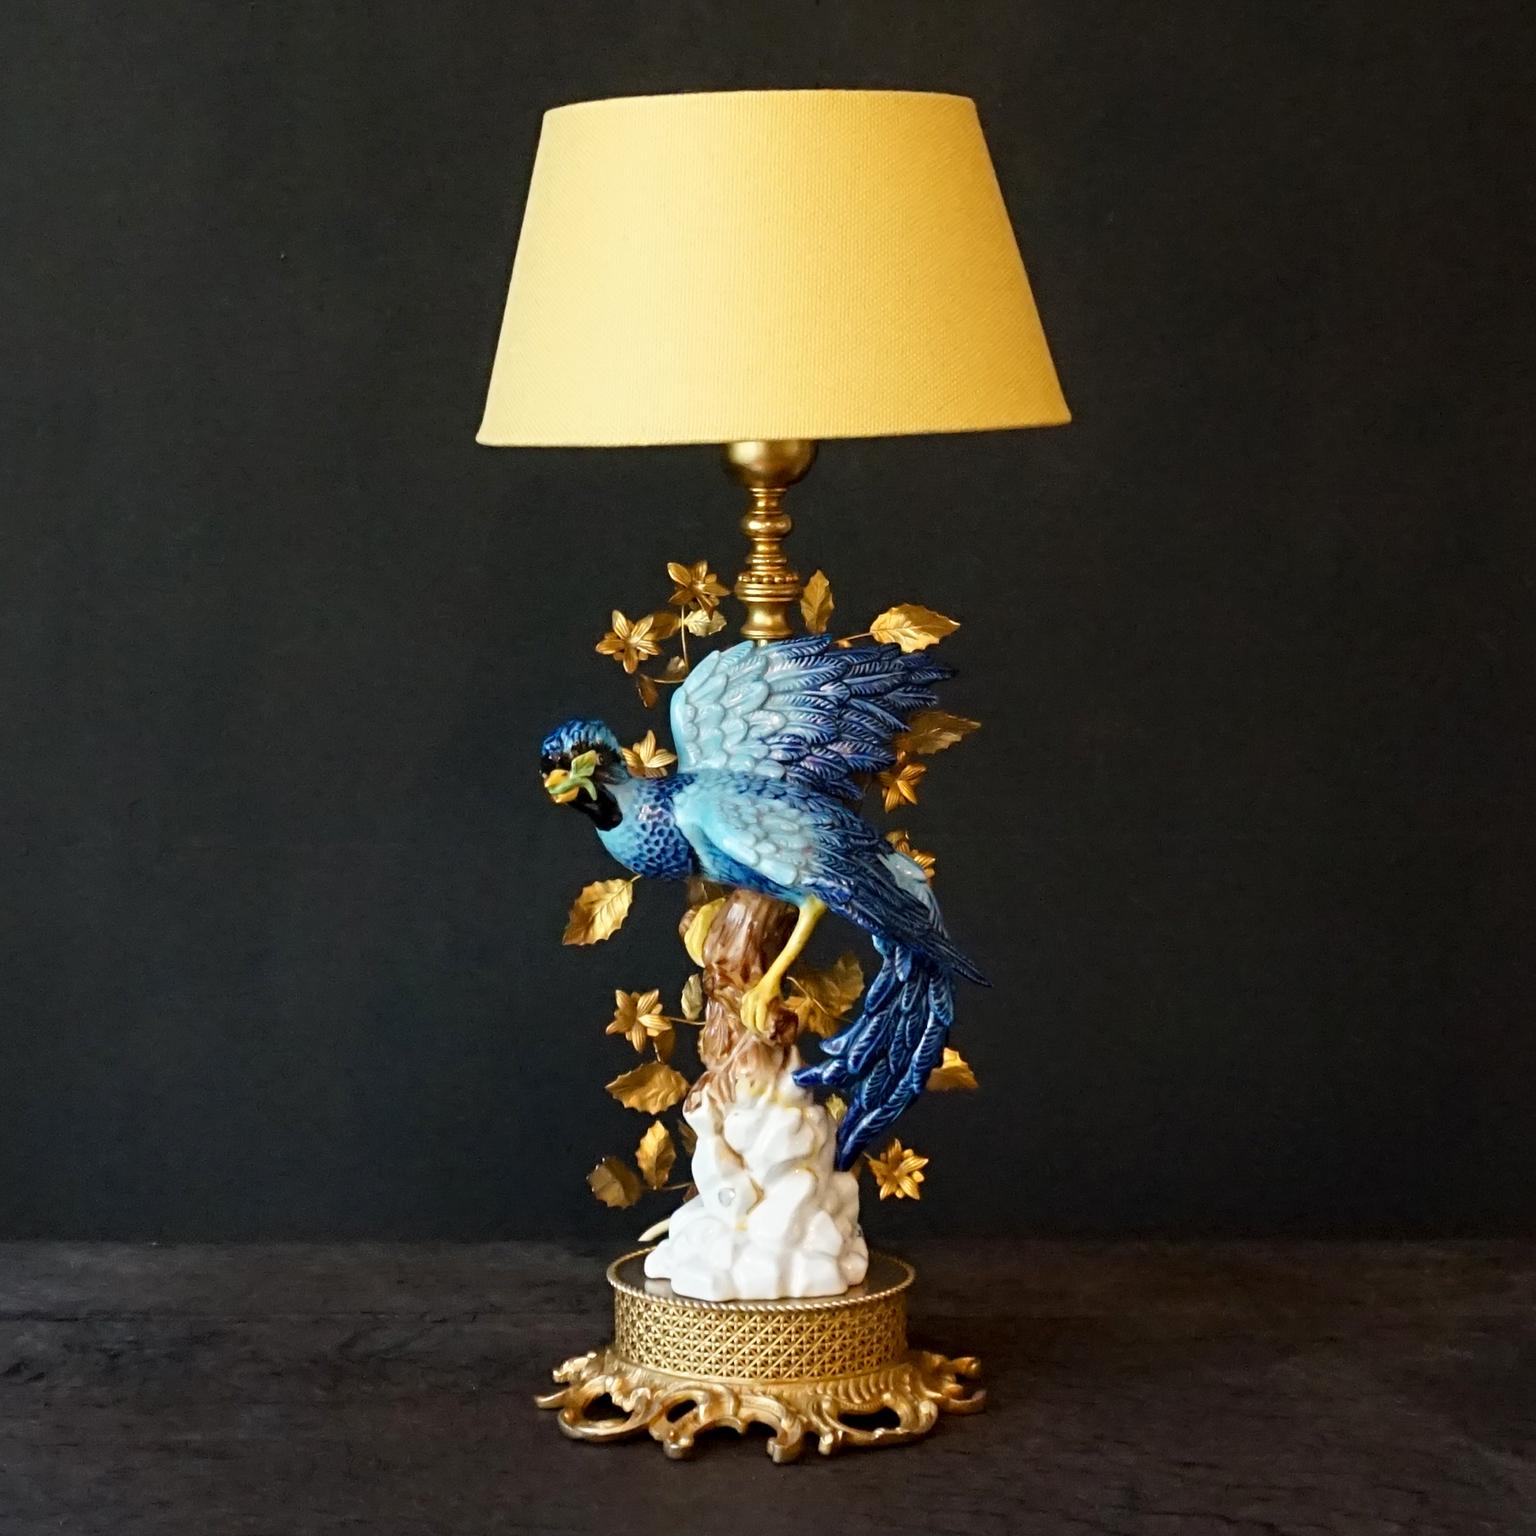 Spektakulär aussehende Tischlampe, die einen handbemalten Porzellanfelsen und einen Ast mit einem auffälligen tropischen blauen Vogel darauf darstellt. Verziert mit Tannenzweigen und Blättern, gekennzeichnet und hergestellt von Giulia Mangani, um